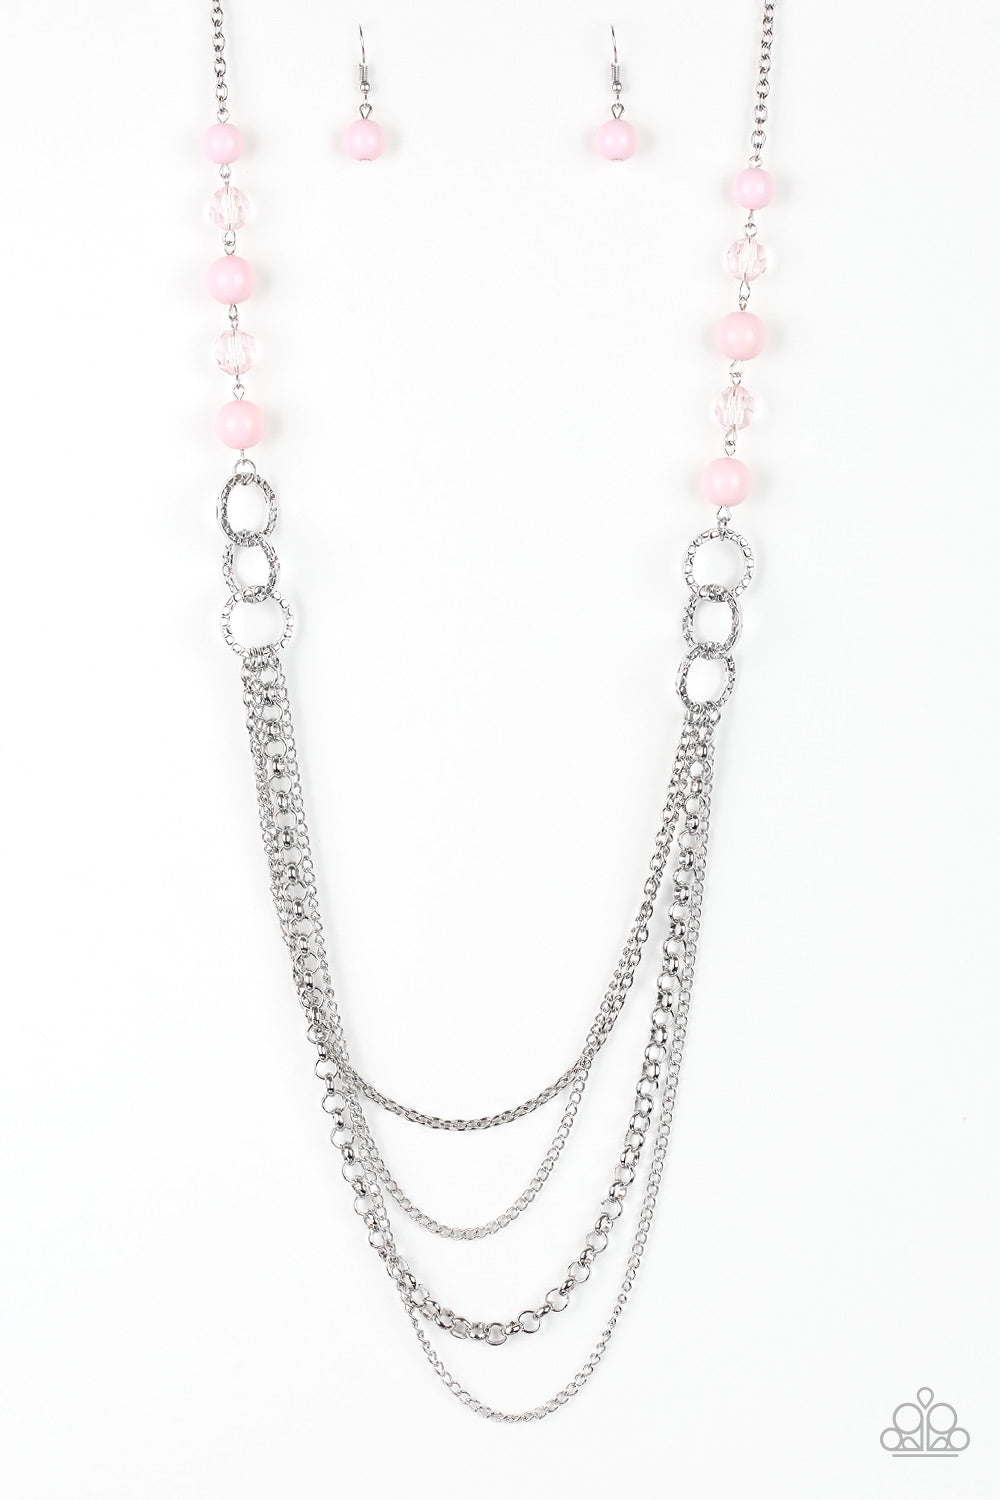 vividly-vivid-pink-necklace